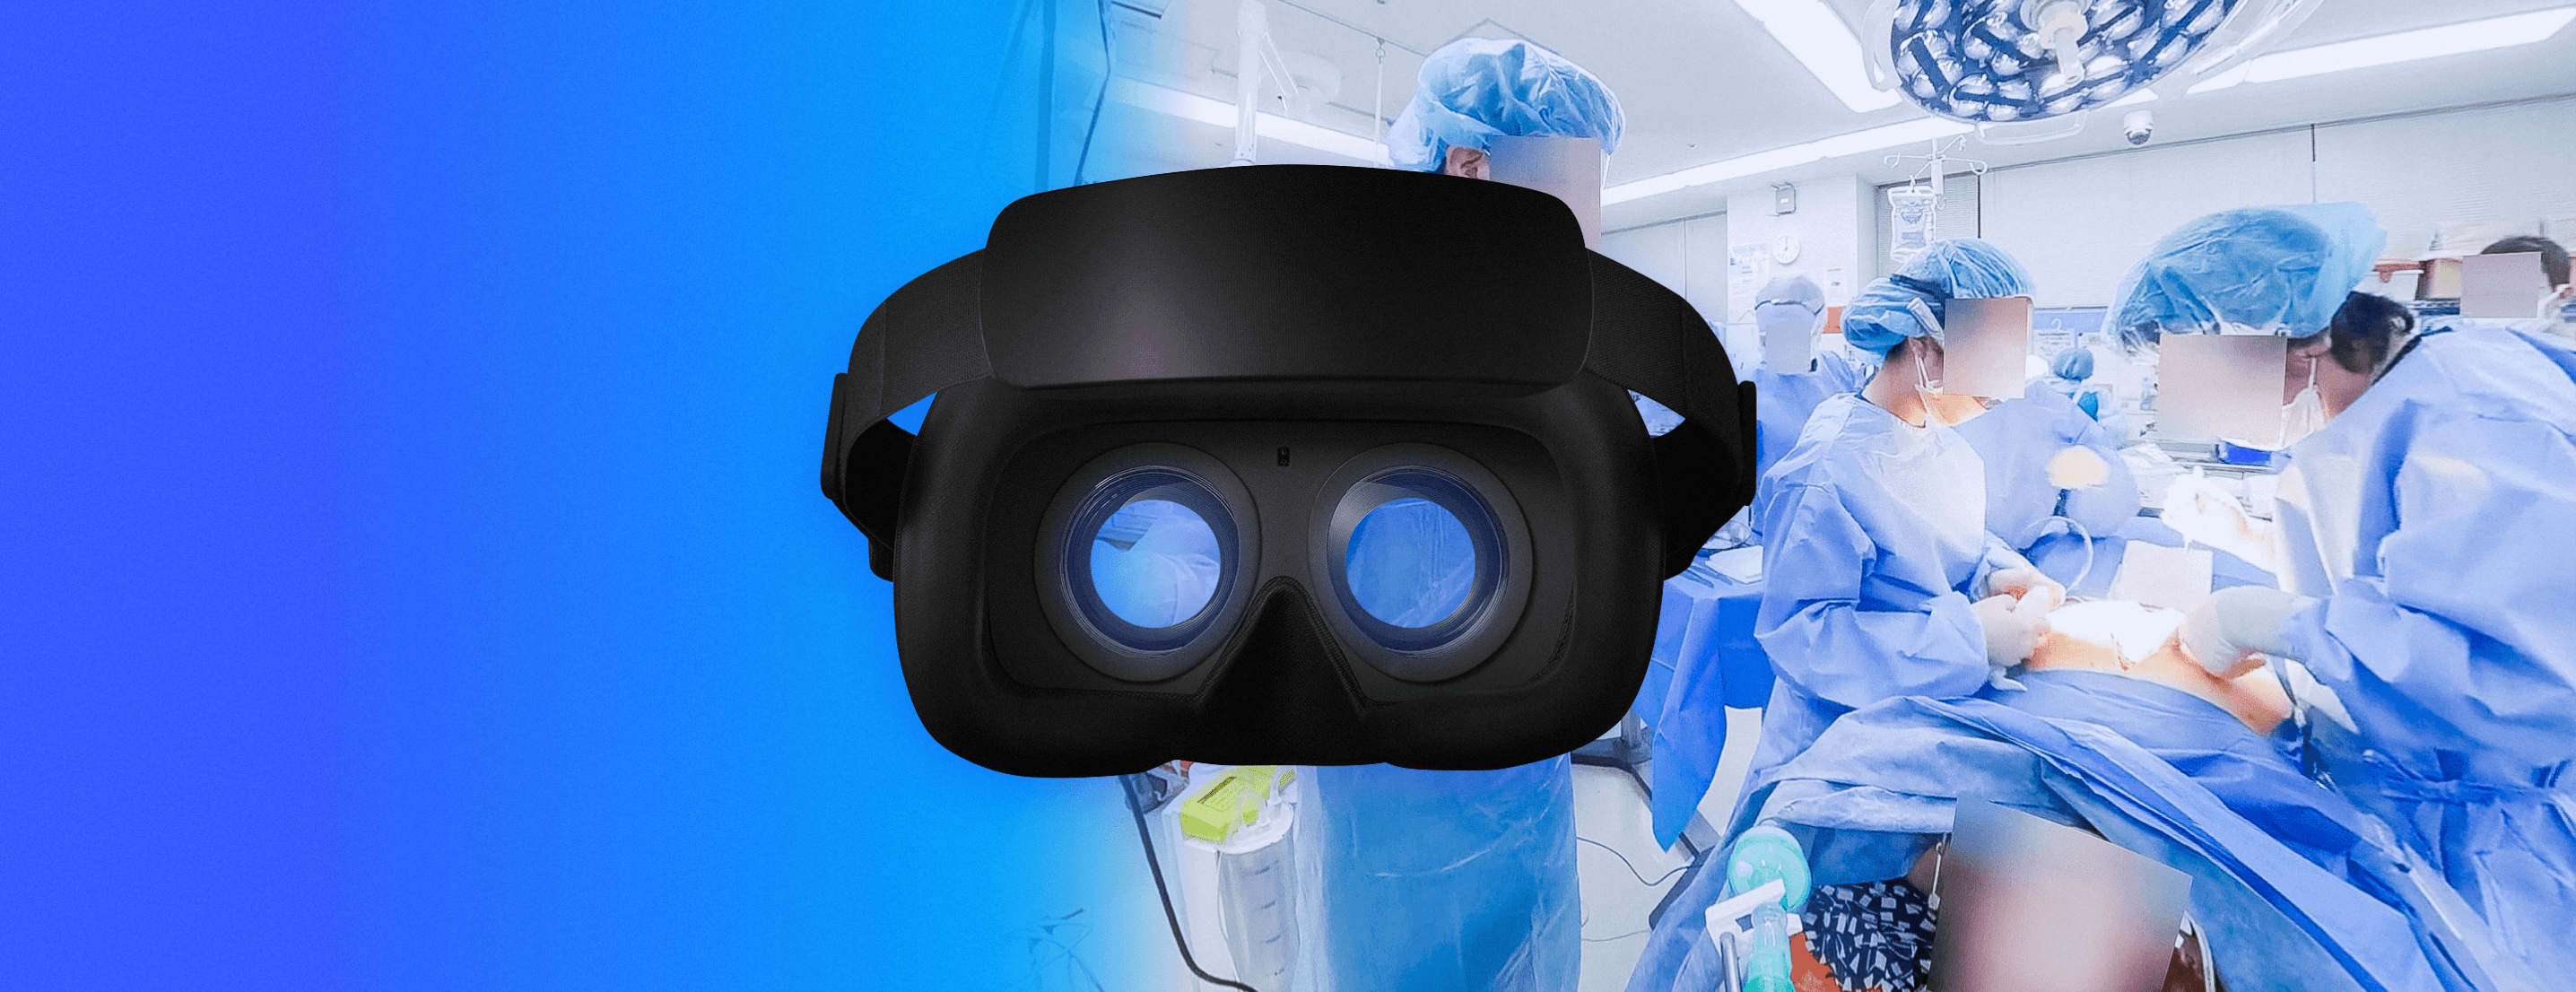 高品質な医療VRをセルフ制作